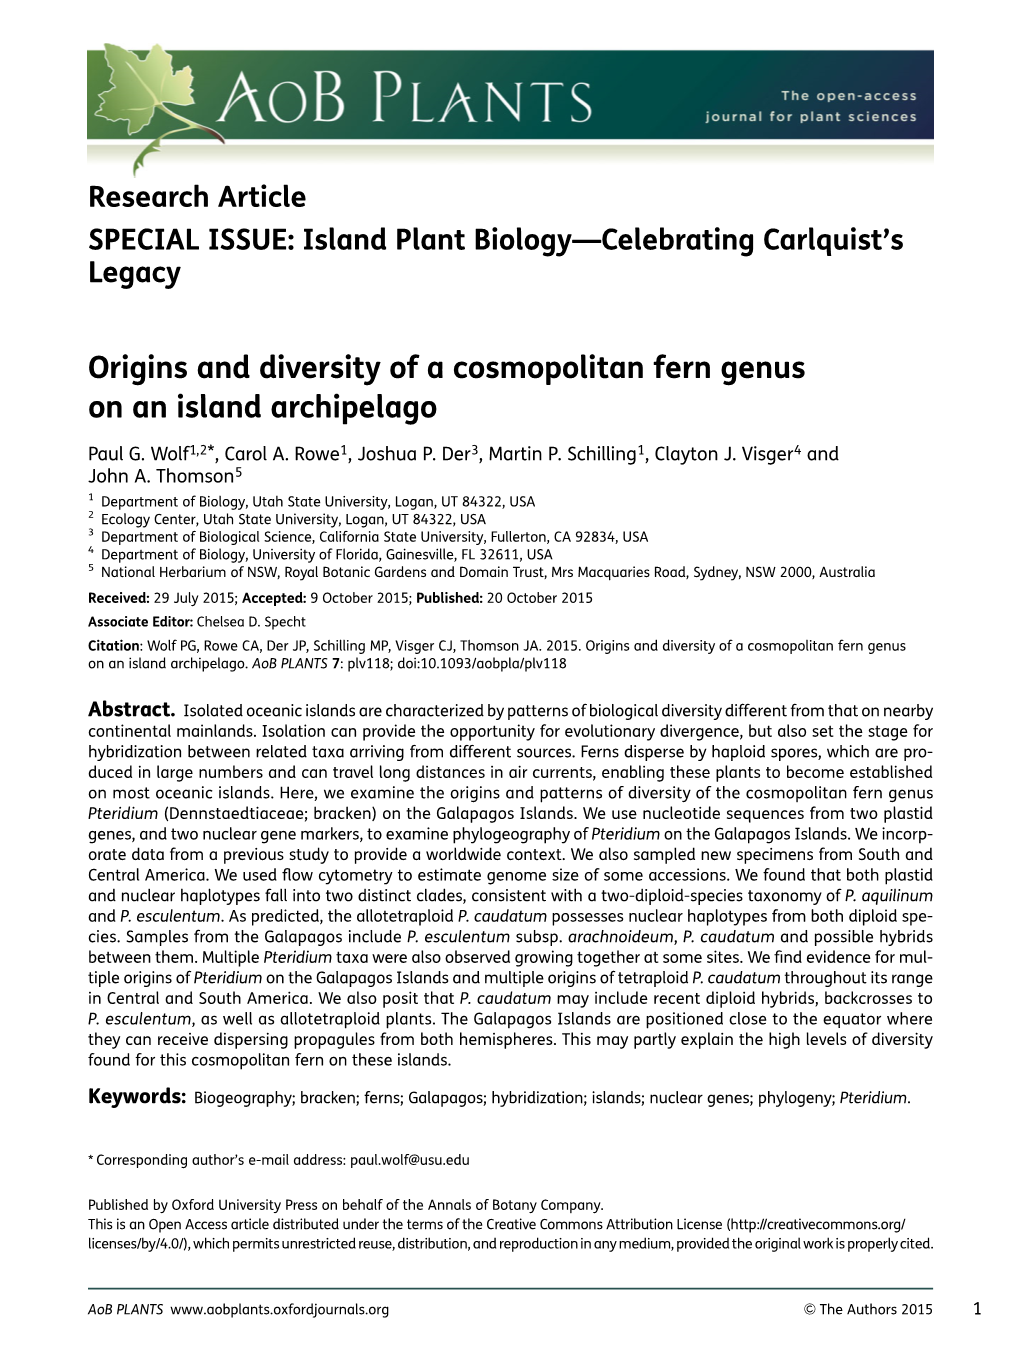 Origins and Diversity of a Cosmopolitan Fern Genus on an Island Archipelago